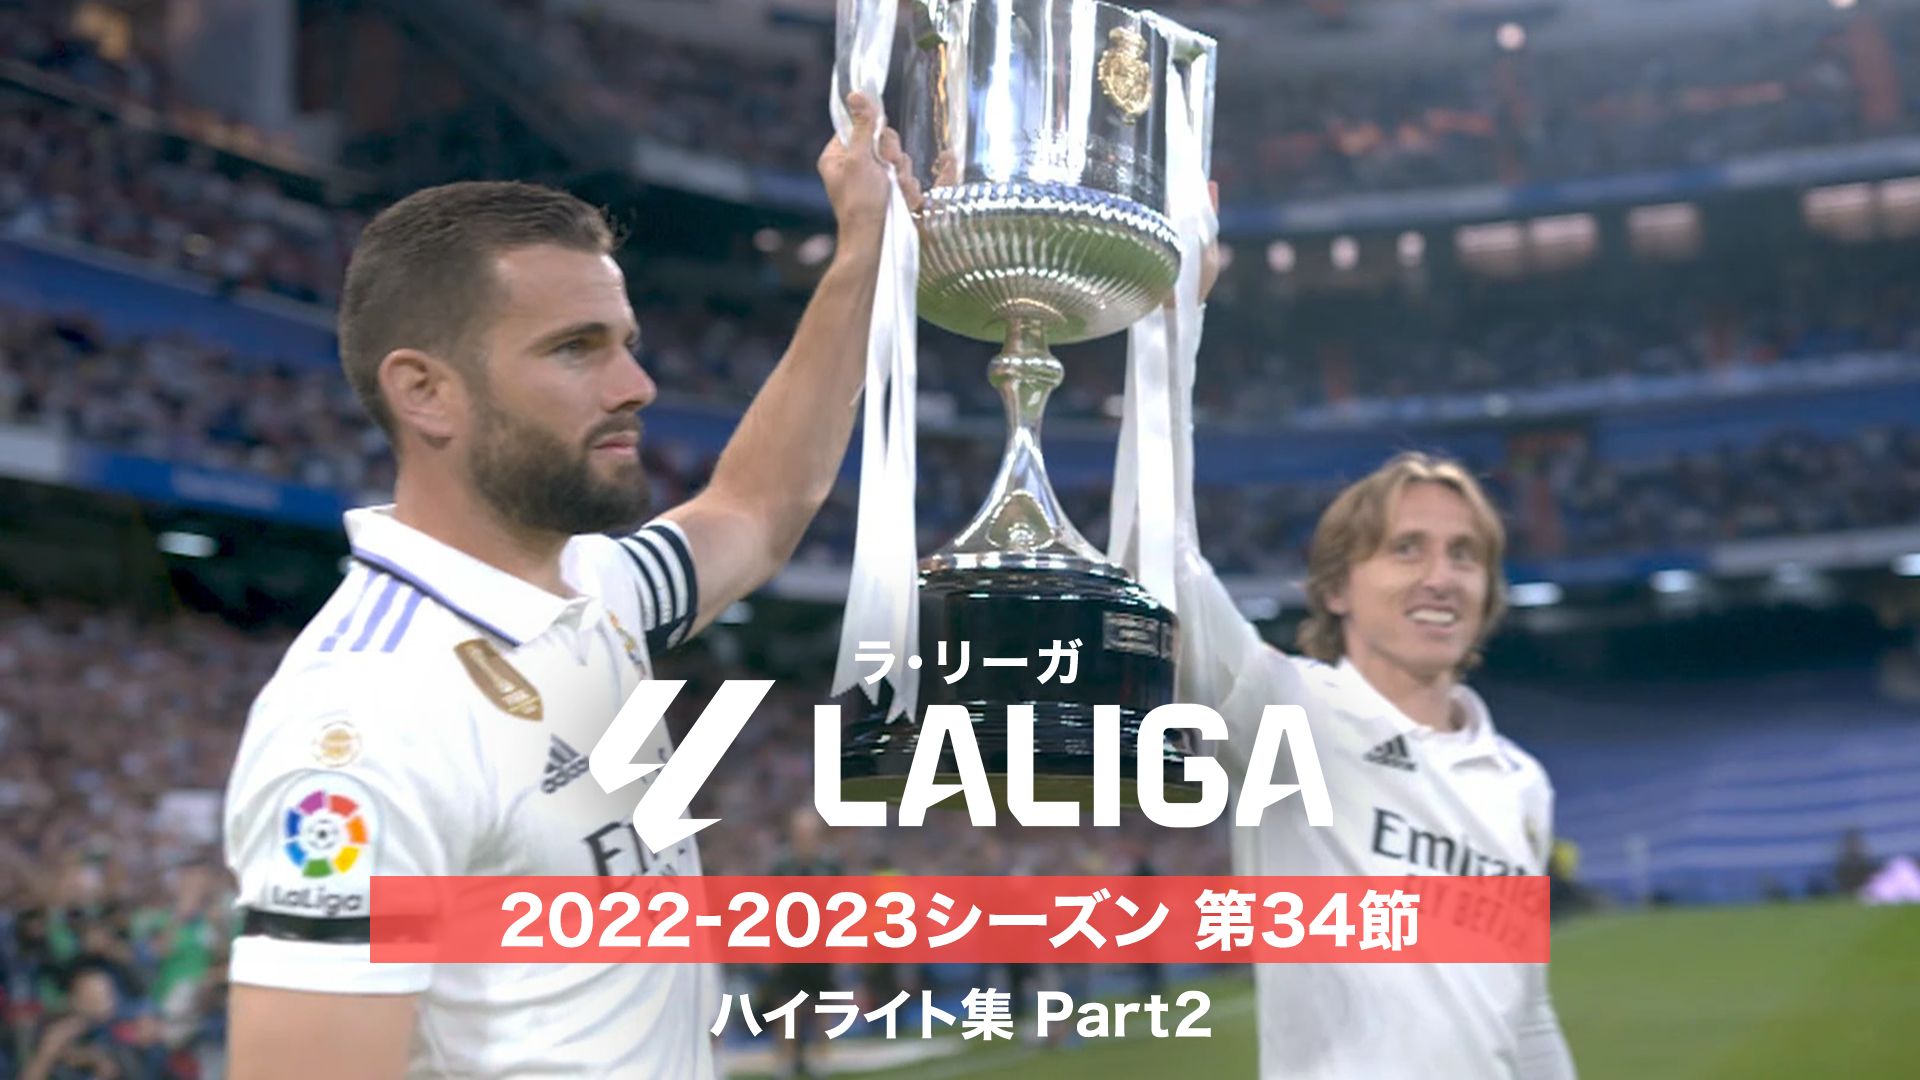 ラ・リーガ 2022-2023シーズン 第34節 ハイライト集 Part2